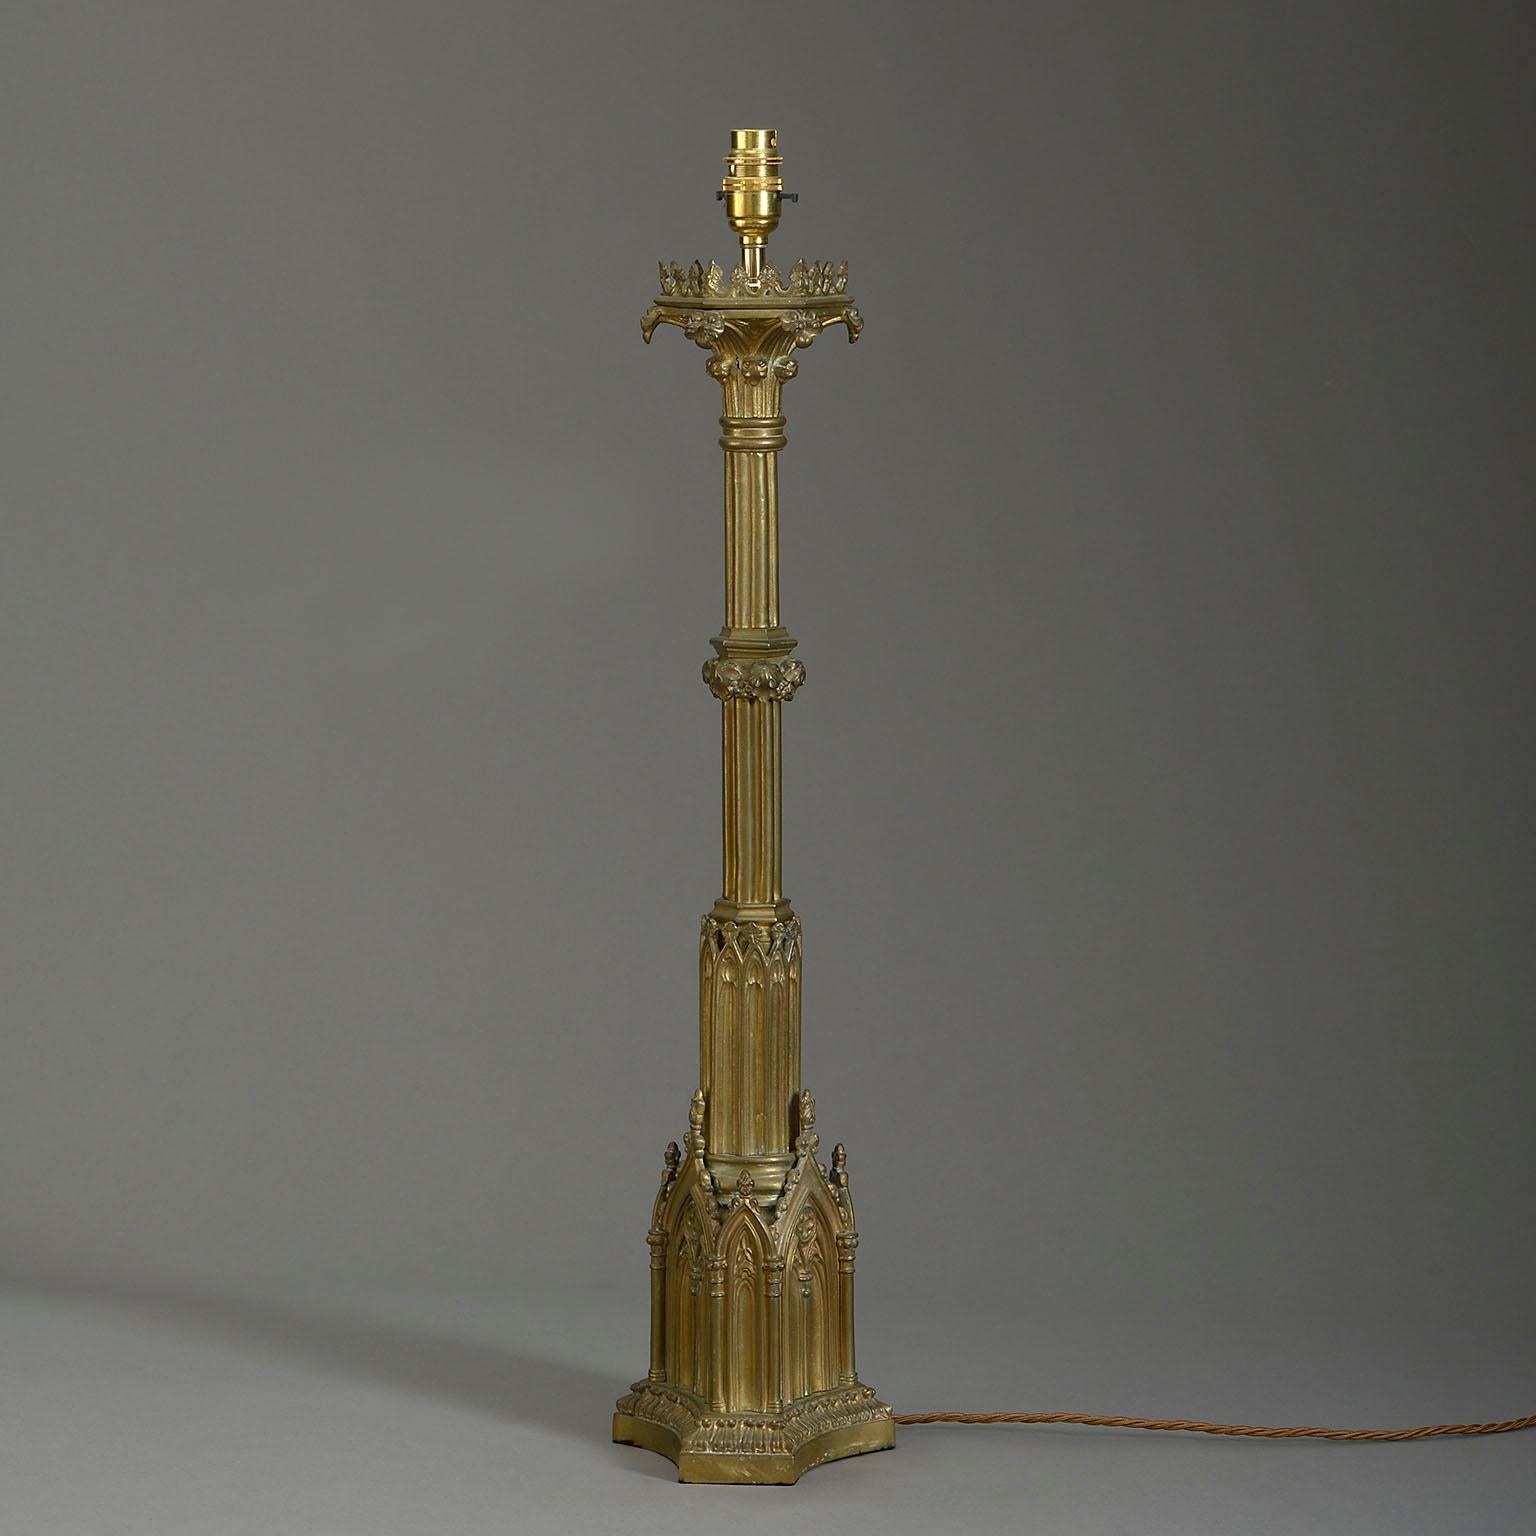 Eine Säulenlampe aus Messing aus dem späten neunzehnten Jahrhundert im gotischen Stil, deren Säulenstamm auf einem dreiförmigen Sockel mit blinden Maßwerkbögen ruht.

Die Abmessungen beziehen sich nur auf Elemente aus antikem Messing.

Verdrahtet